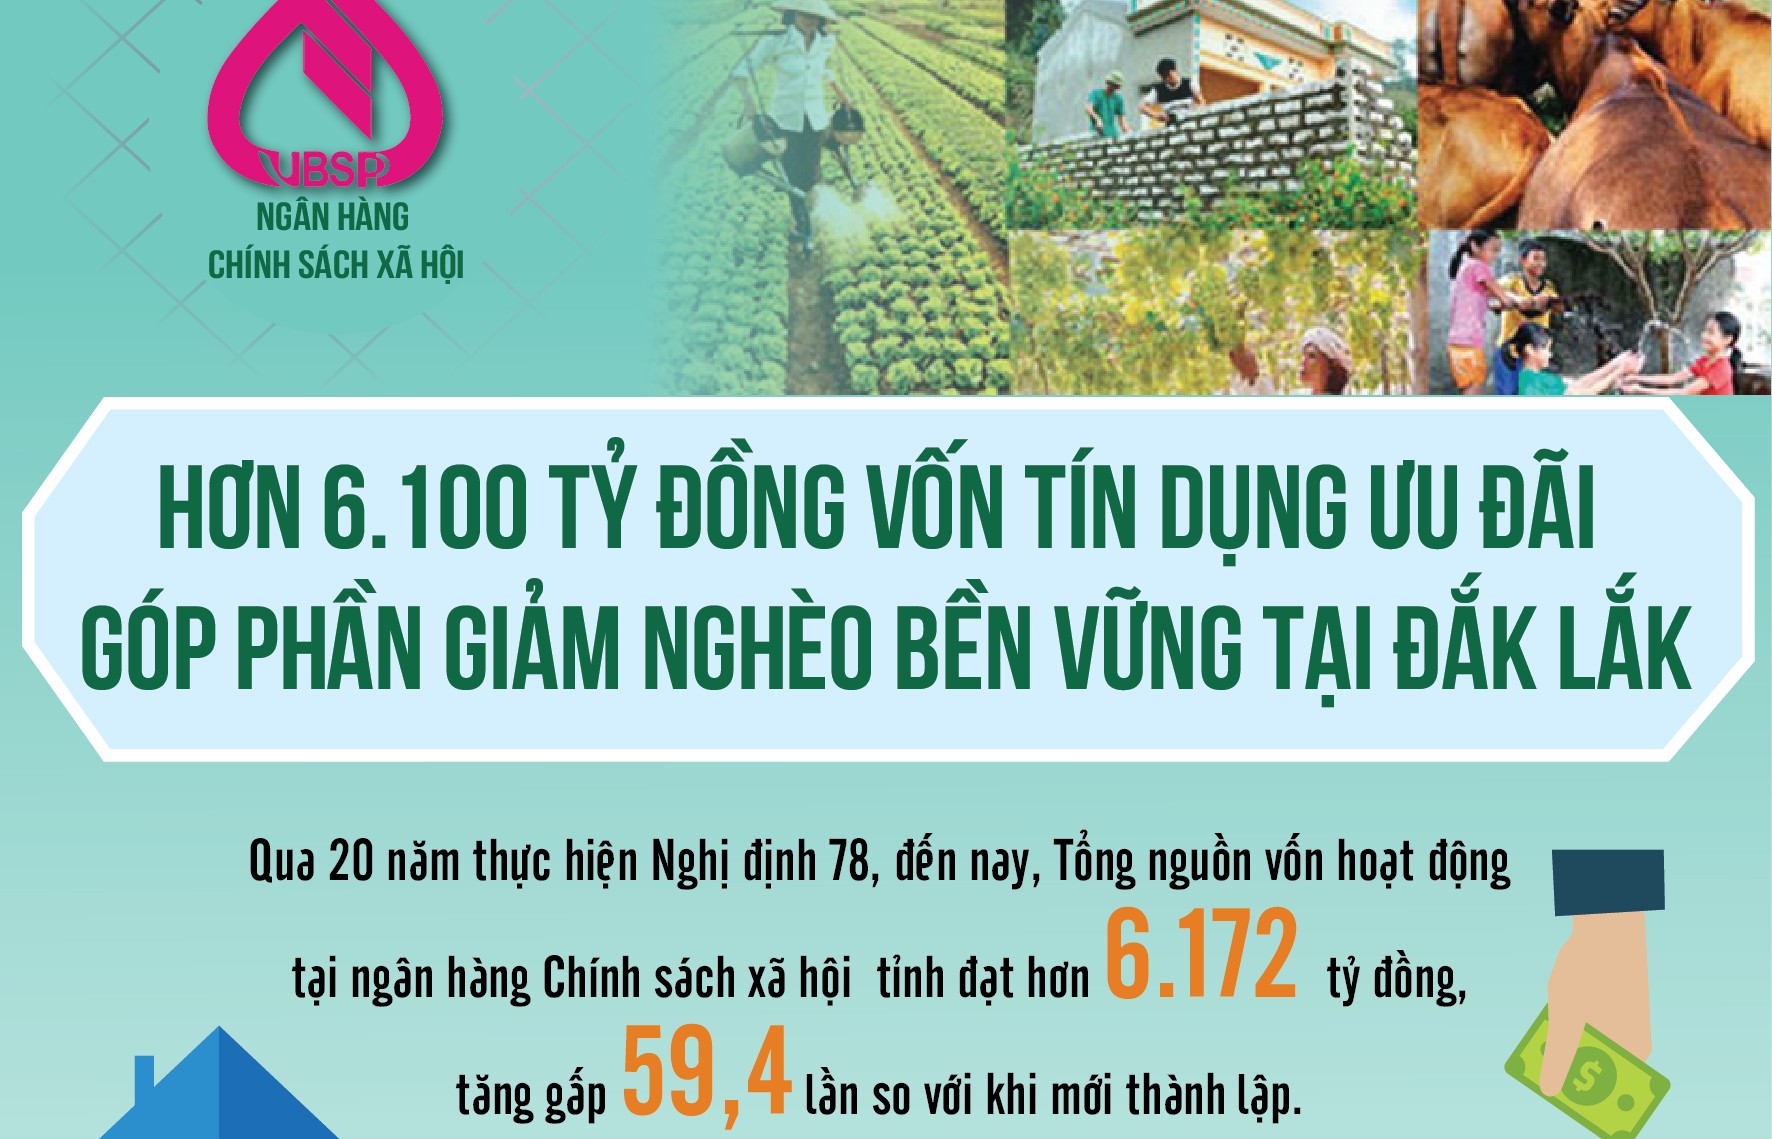 Hơn 6.100 tỷ đồng vốn tín dụng ưu đãi góp phần giảm nghèo bền vững tại Đắk Lắk